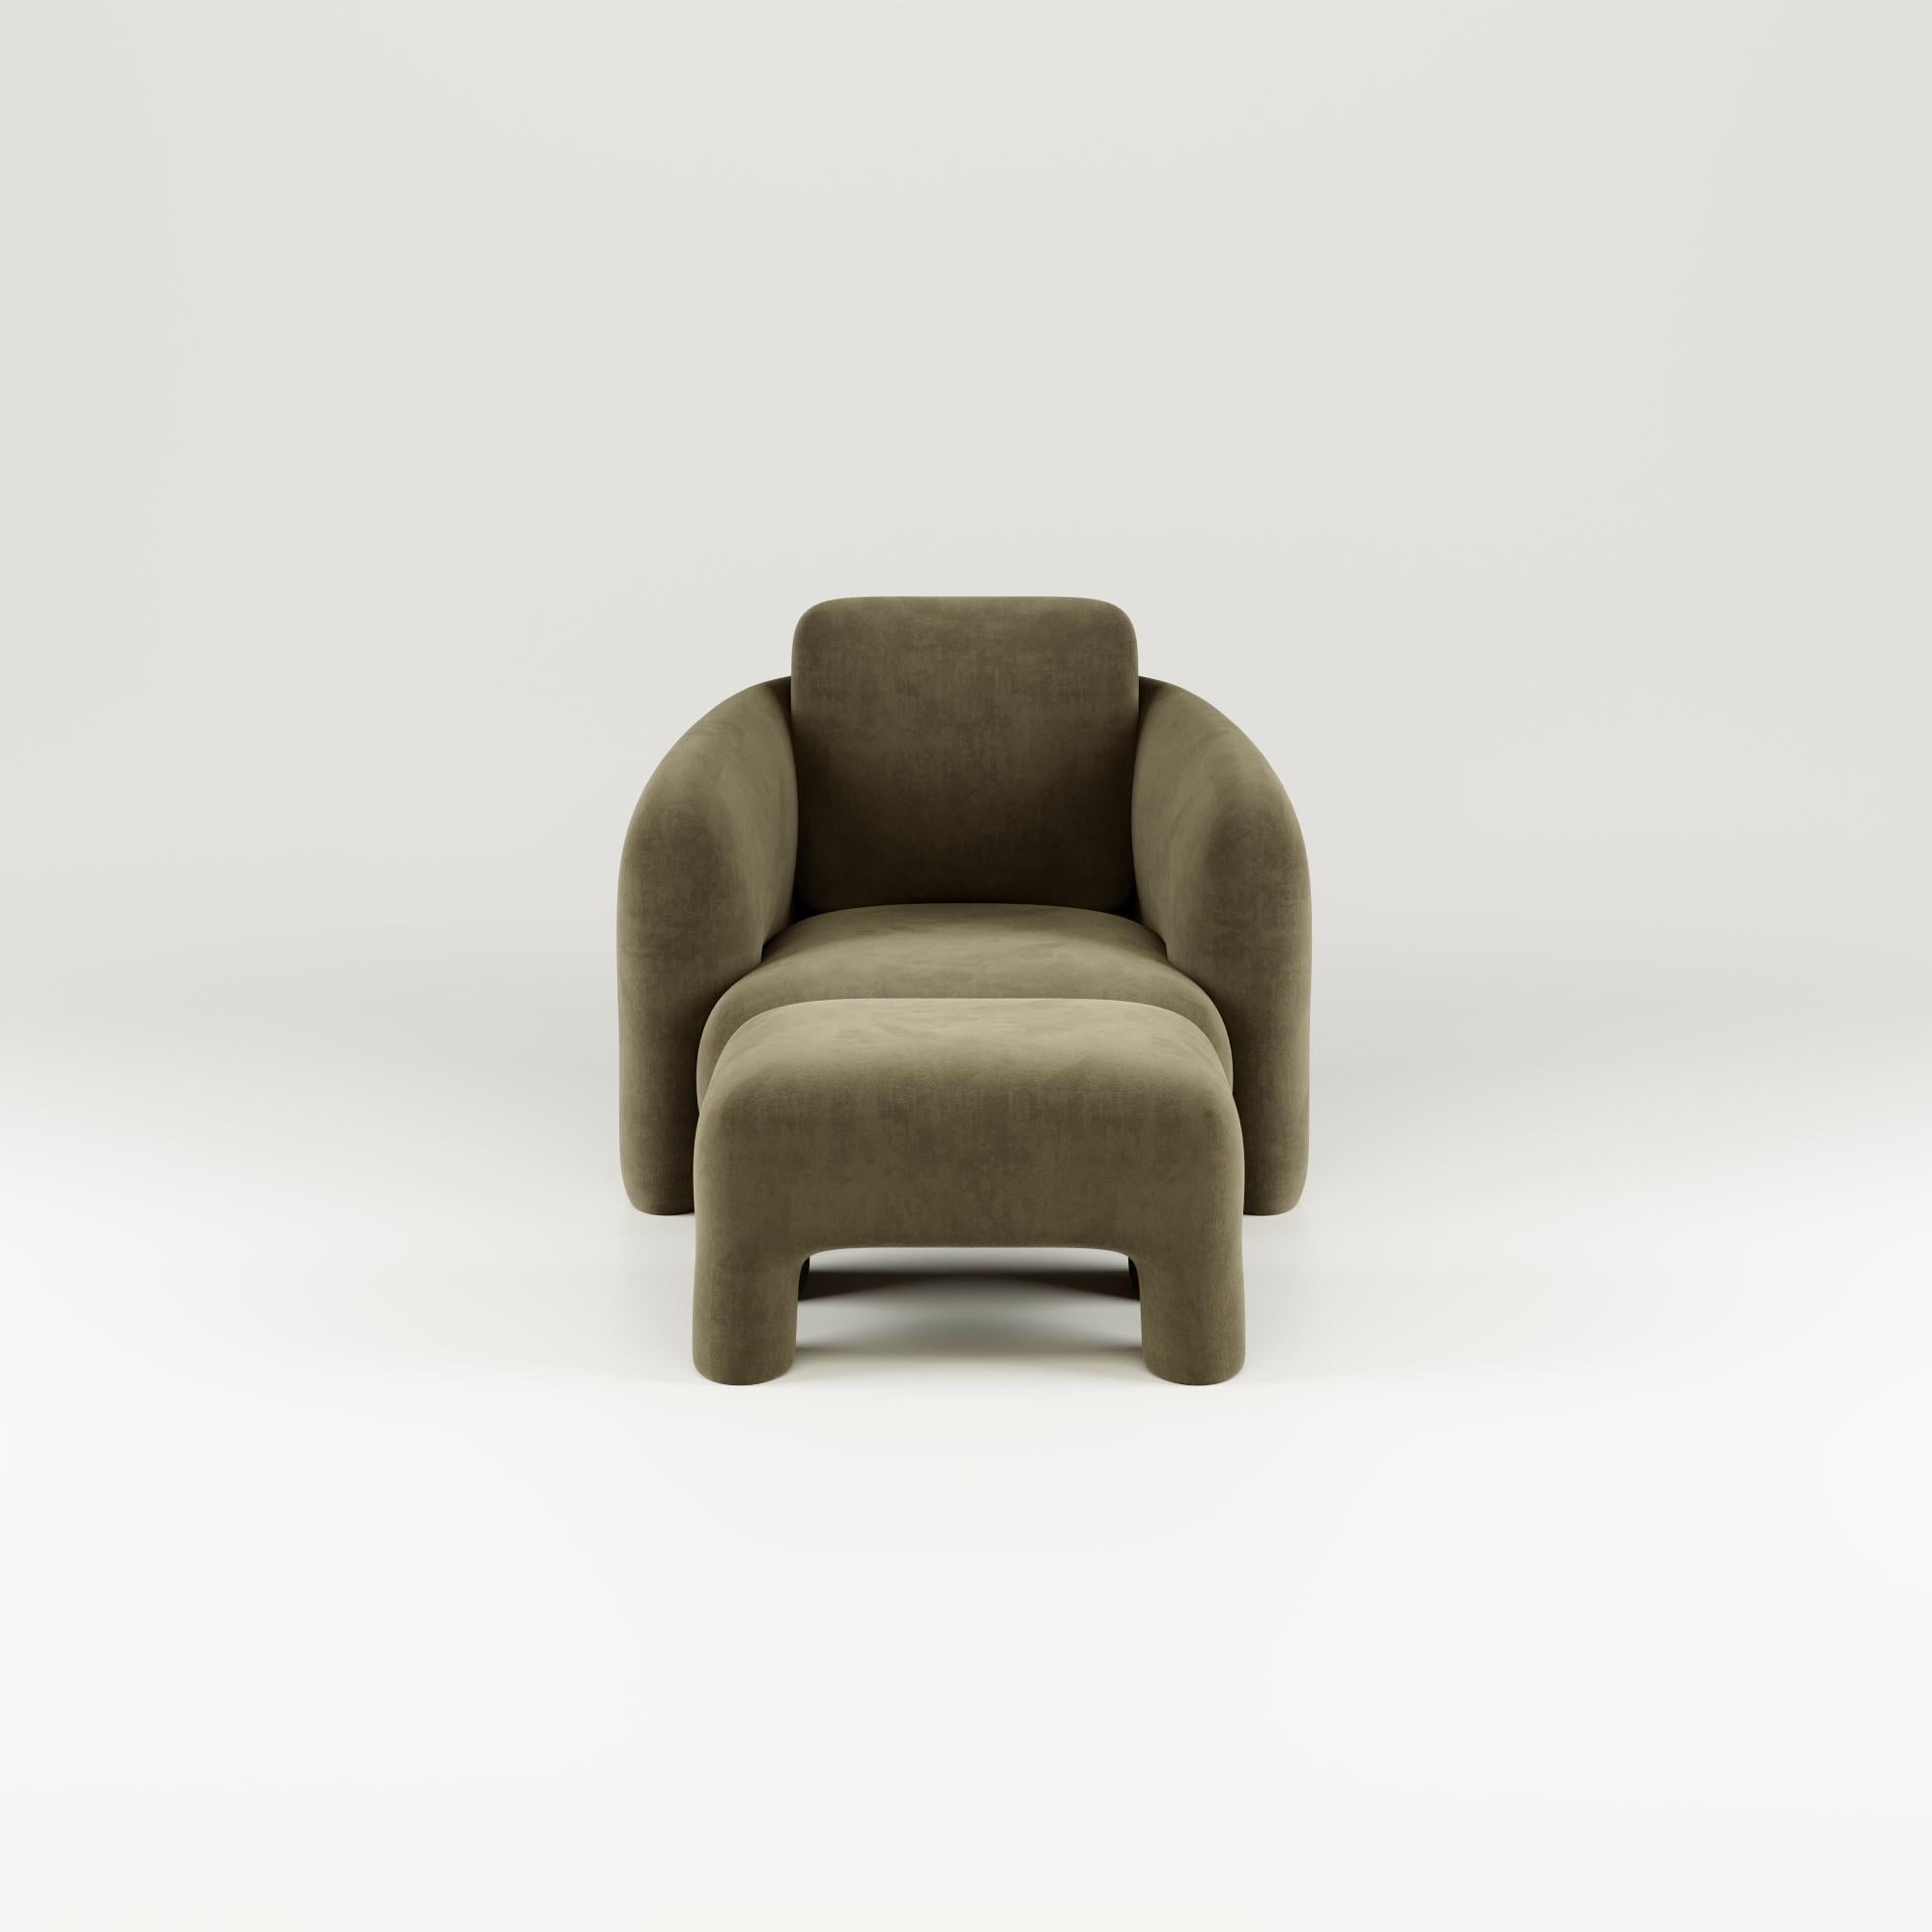 Der Bold Lounge Chair besticht durch sein raffiniertes, modernes Design und seine entspannte Raffinesse und ist ein außergewöhnliches Statement. Sein bemerkenswertes Design, das mit luxuriösen Oberflächen verziert ist, definiert seinen einzigartigen